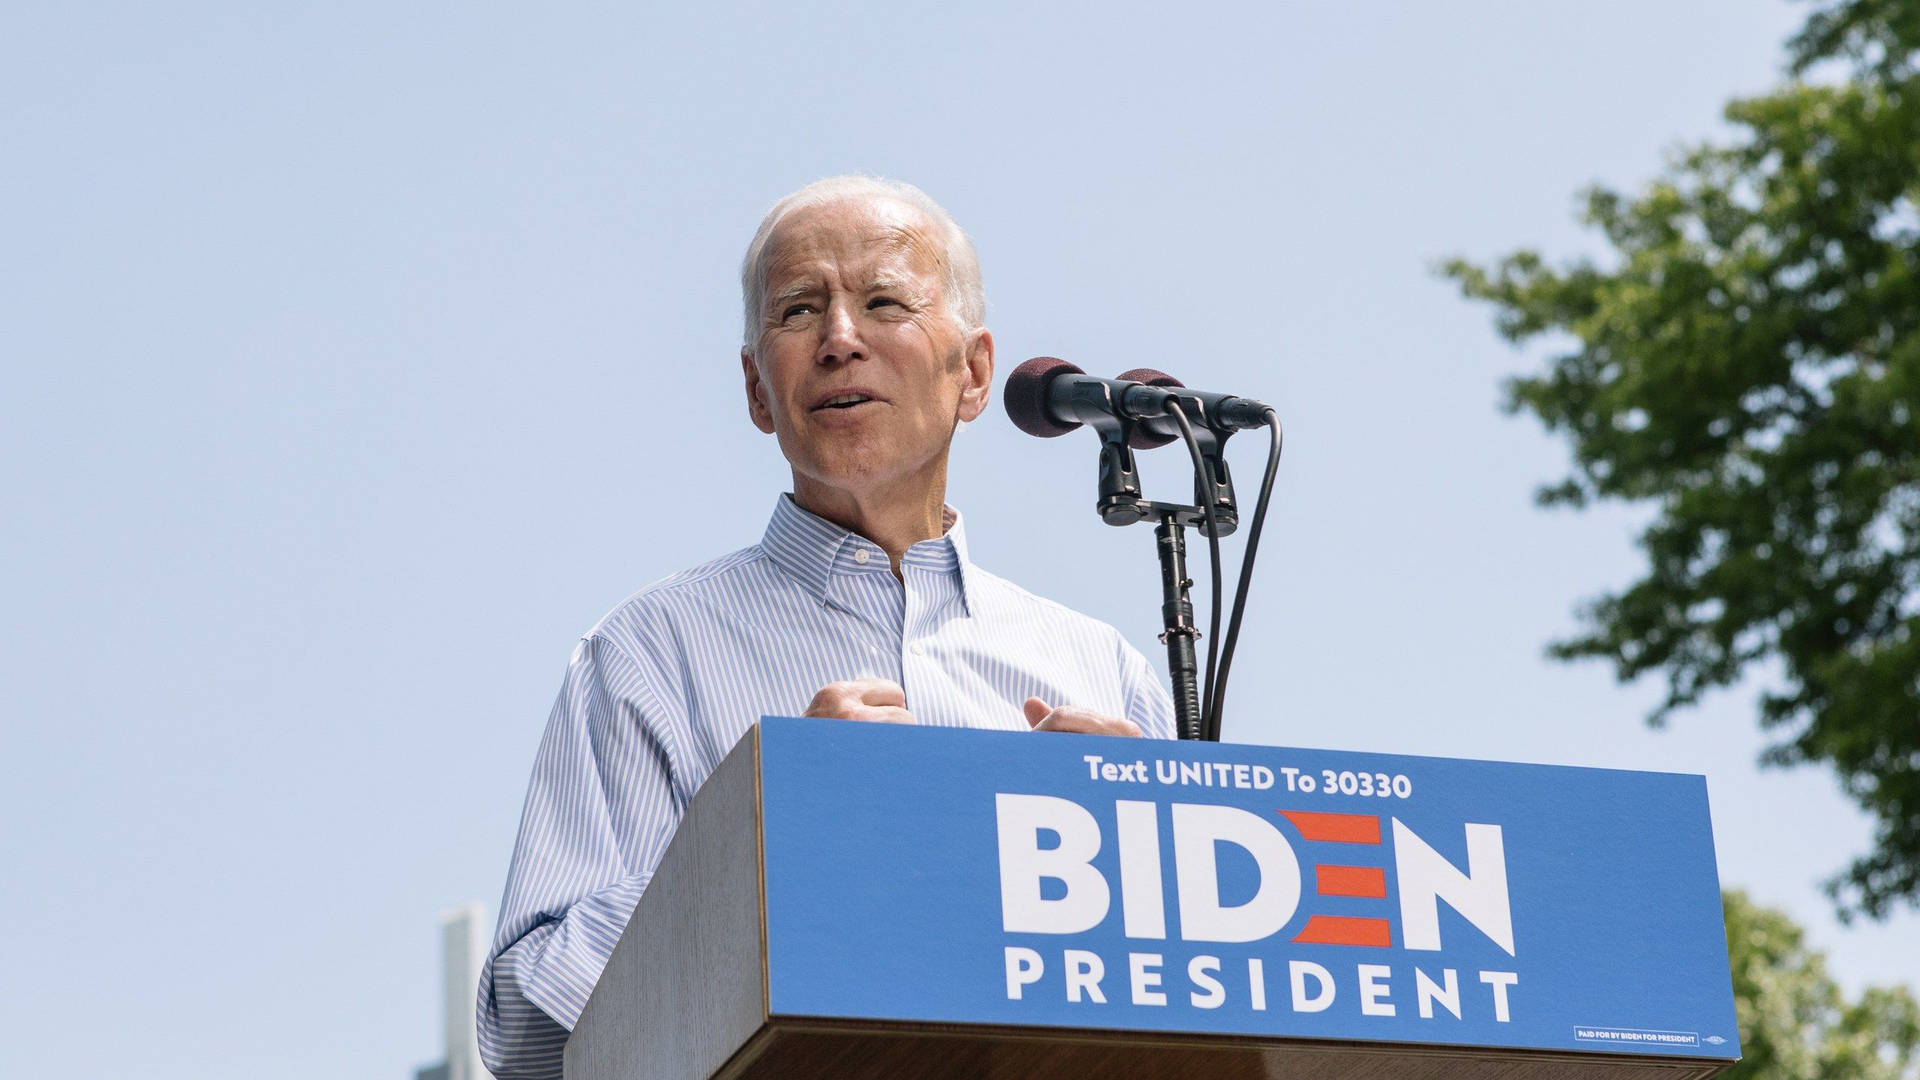 Joe Biden delivers powerful speech on stage Wallpaper